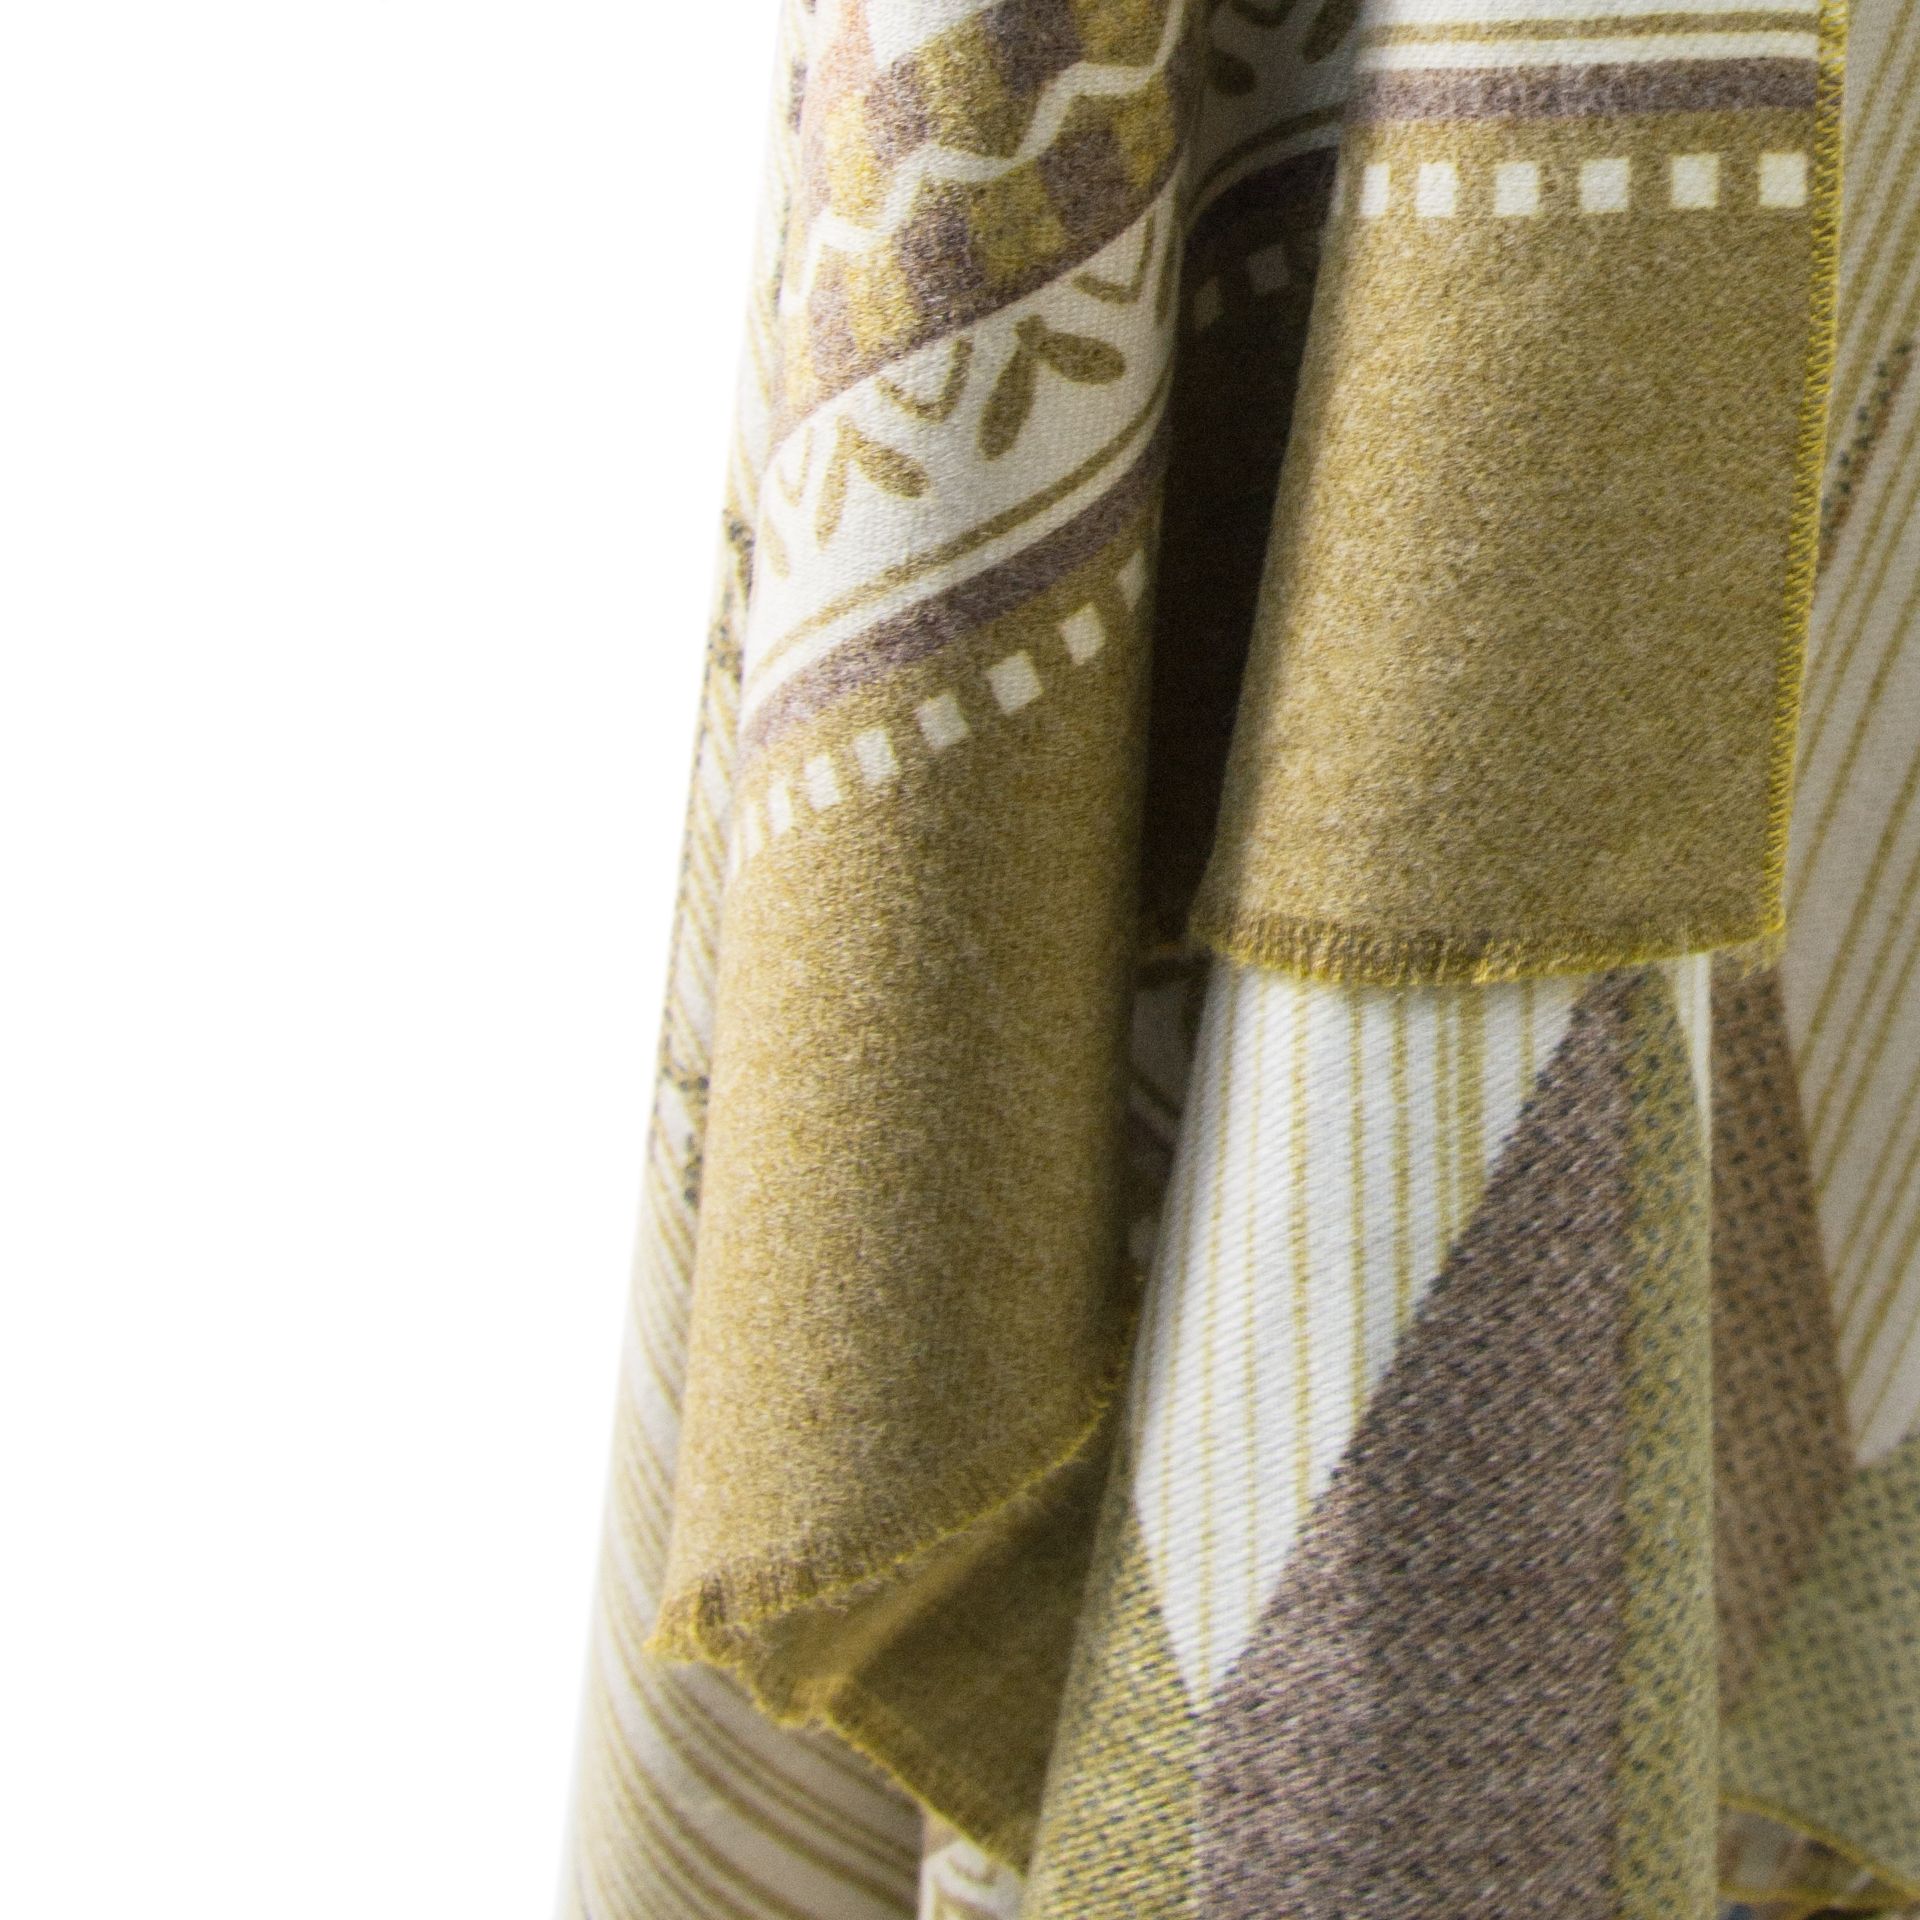 musztardowy szal z etnicznym wzorem - Allora zdjęcie 3